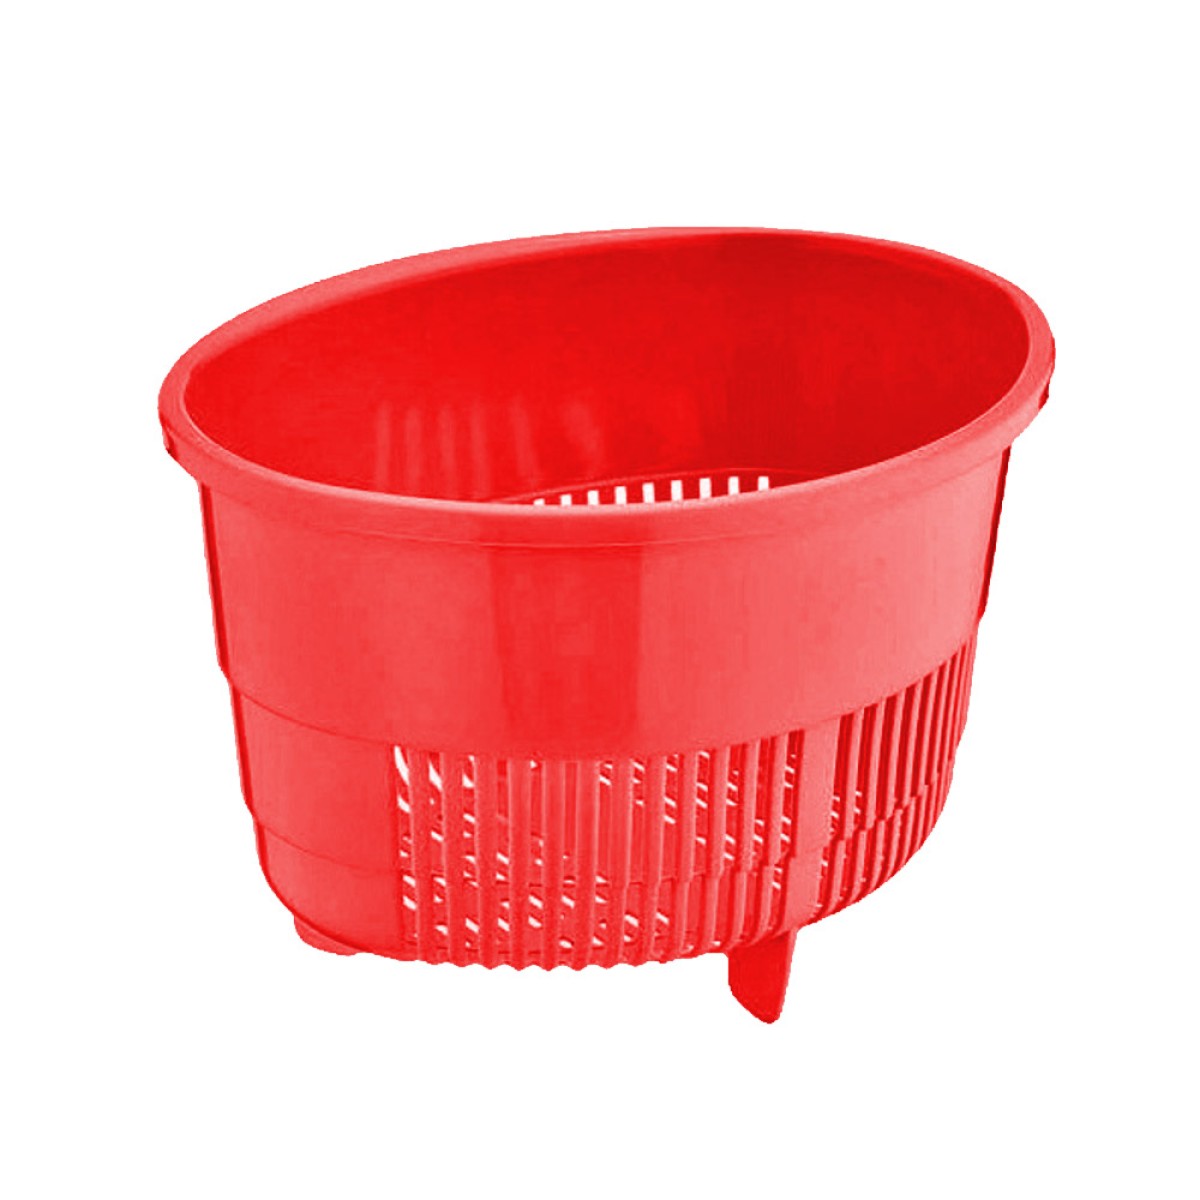 Σουρωτήρι Πλαστικό κόκκινο χρώμα TNS 32-800-1437-1